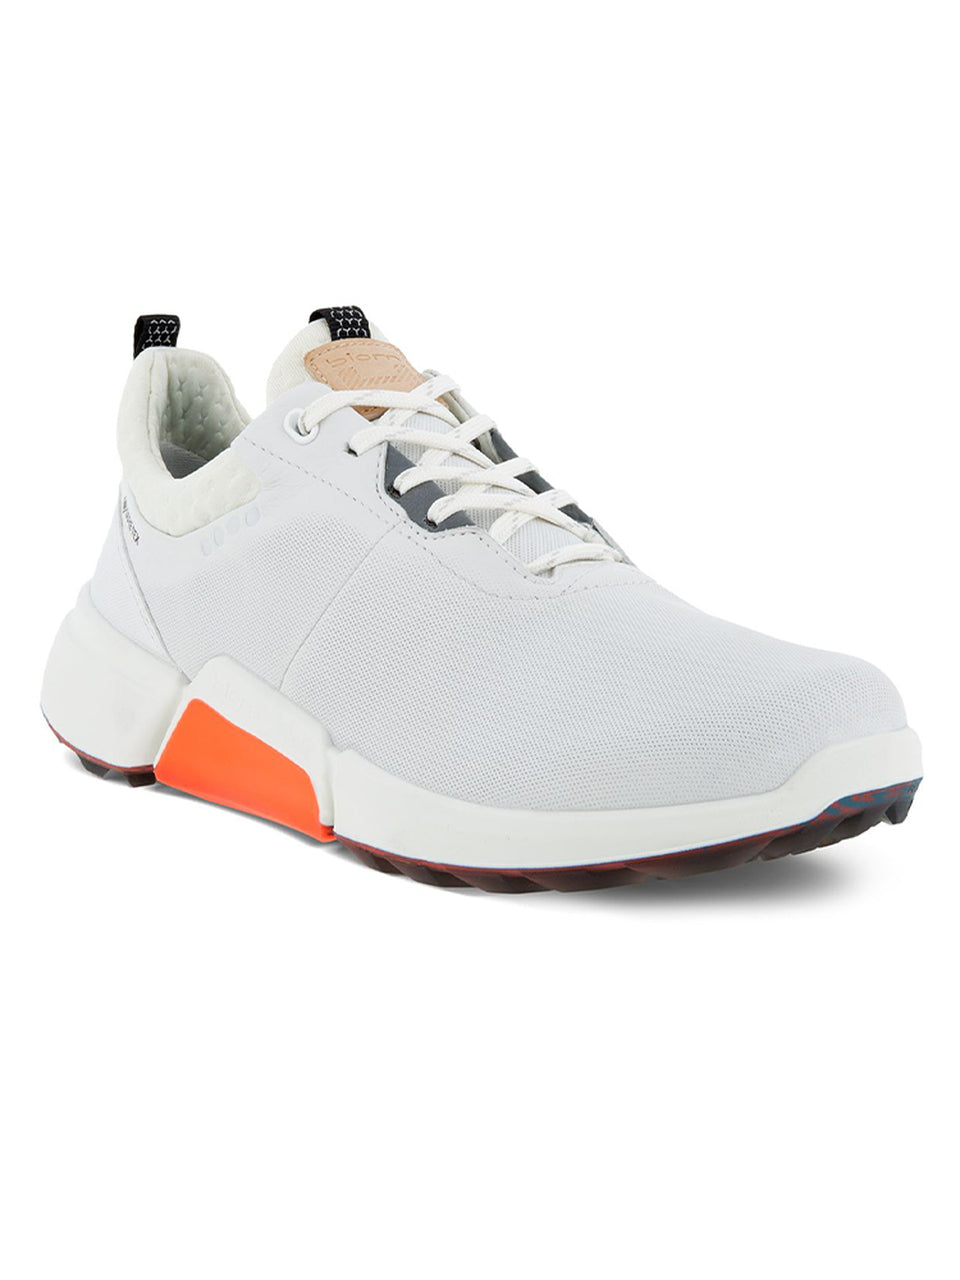 Ecco Womens BIOM Hybrid 4 Golf Shoes- White